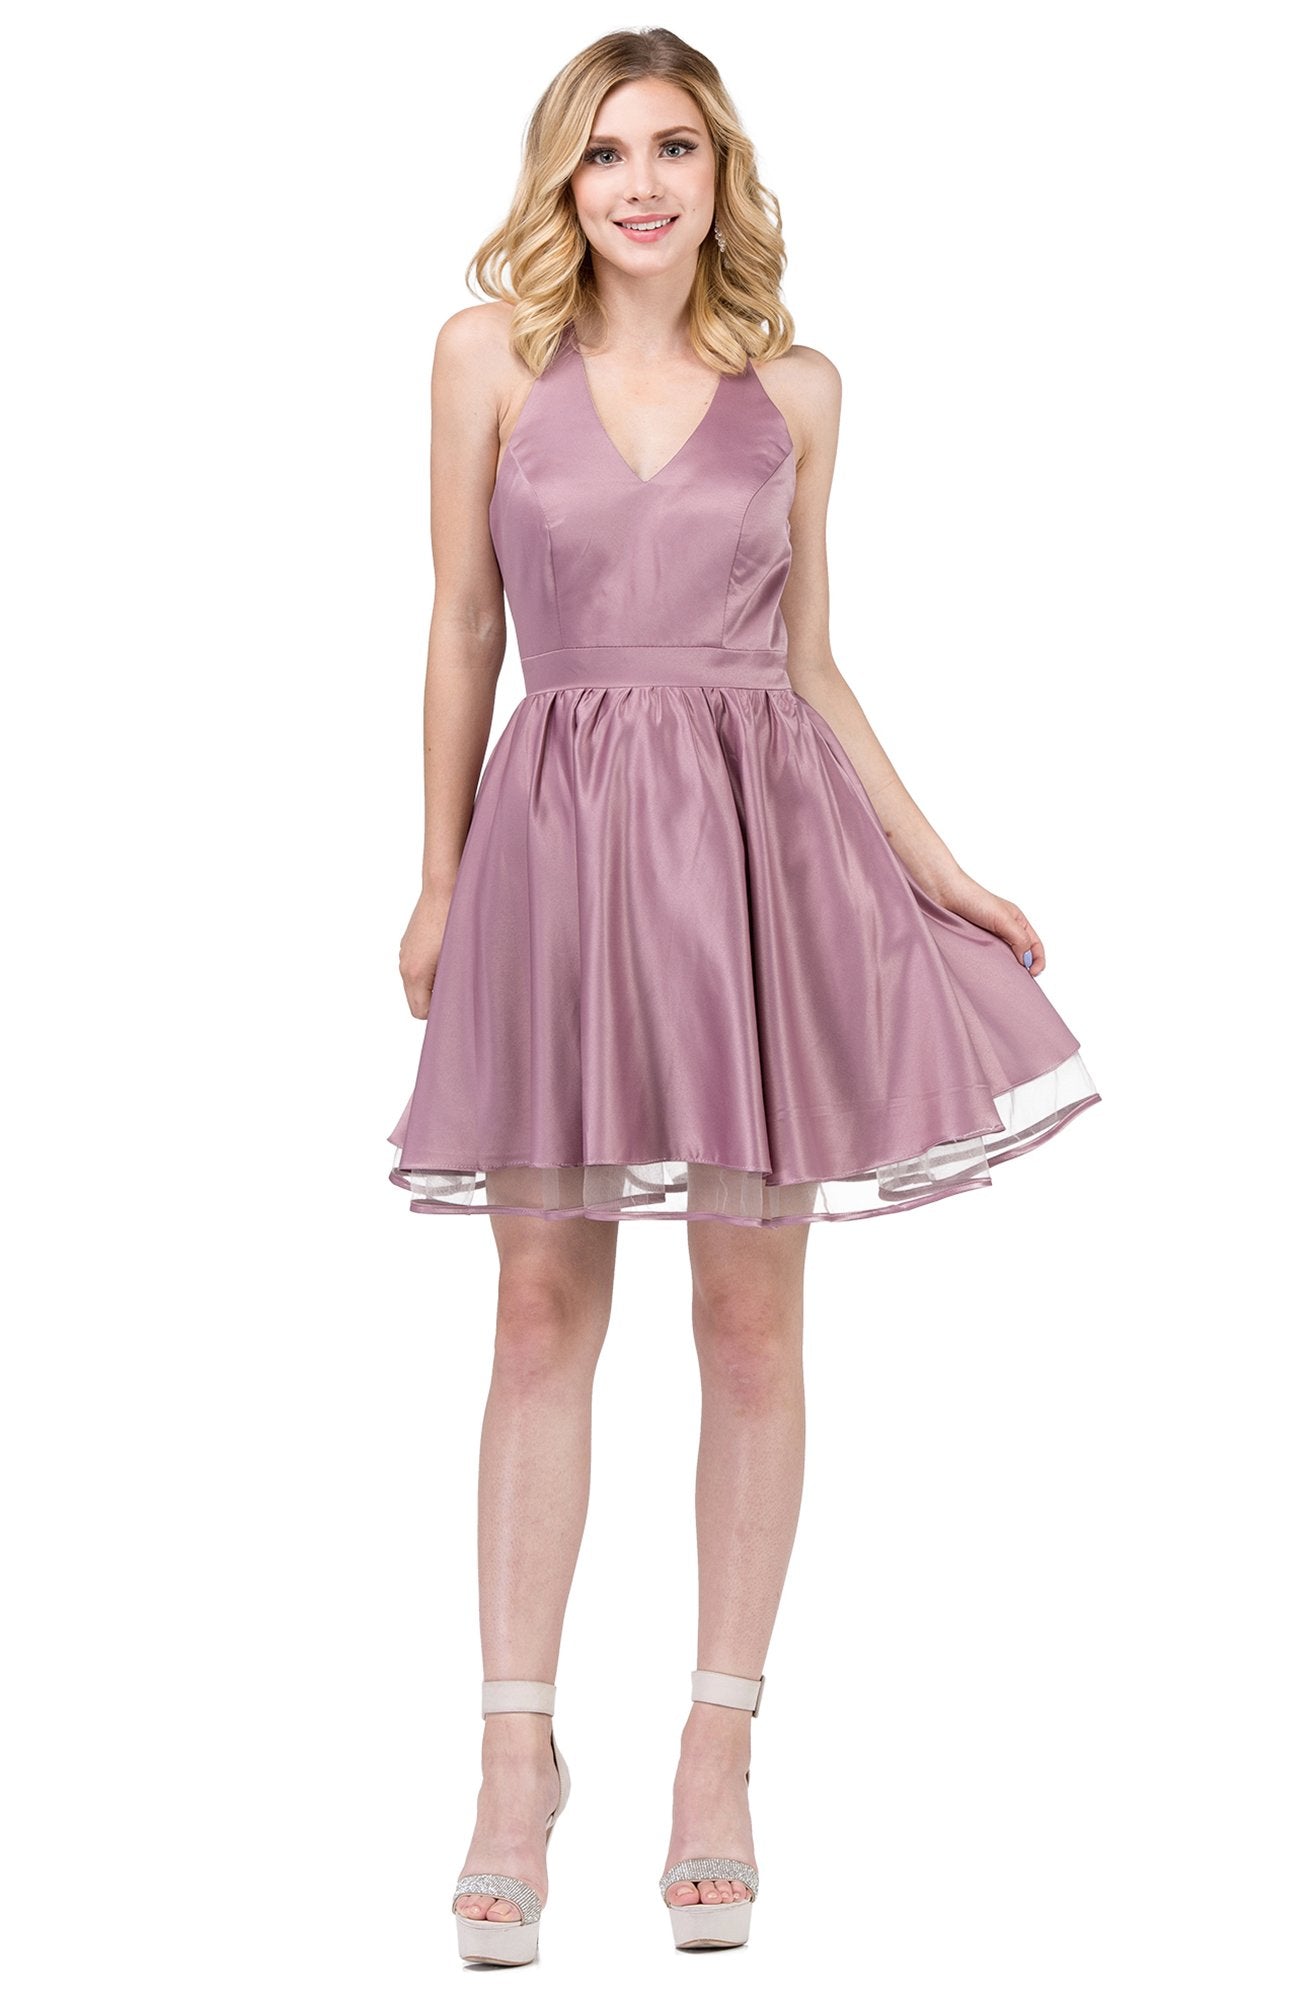 Dancing Queen - 9836 Sleeveless Sheer-Trimmed A-Line Dress